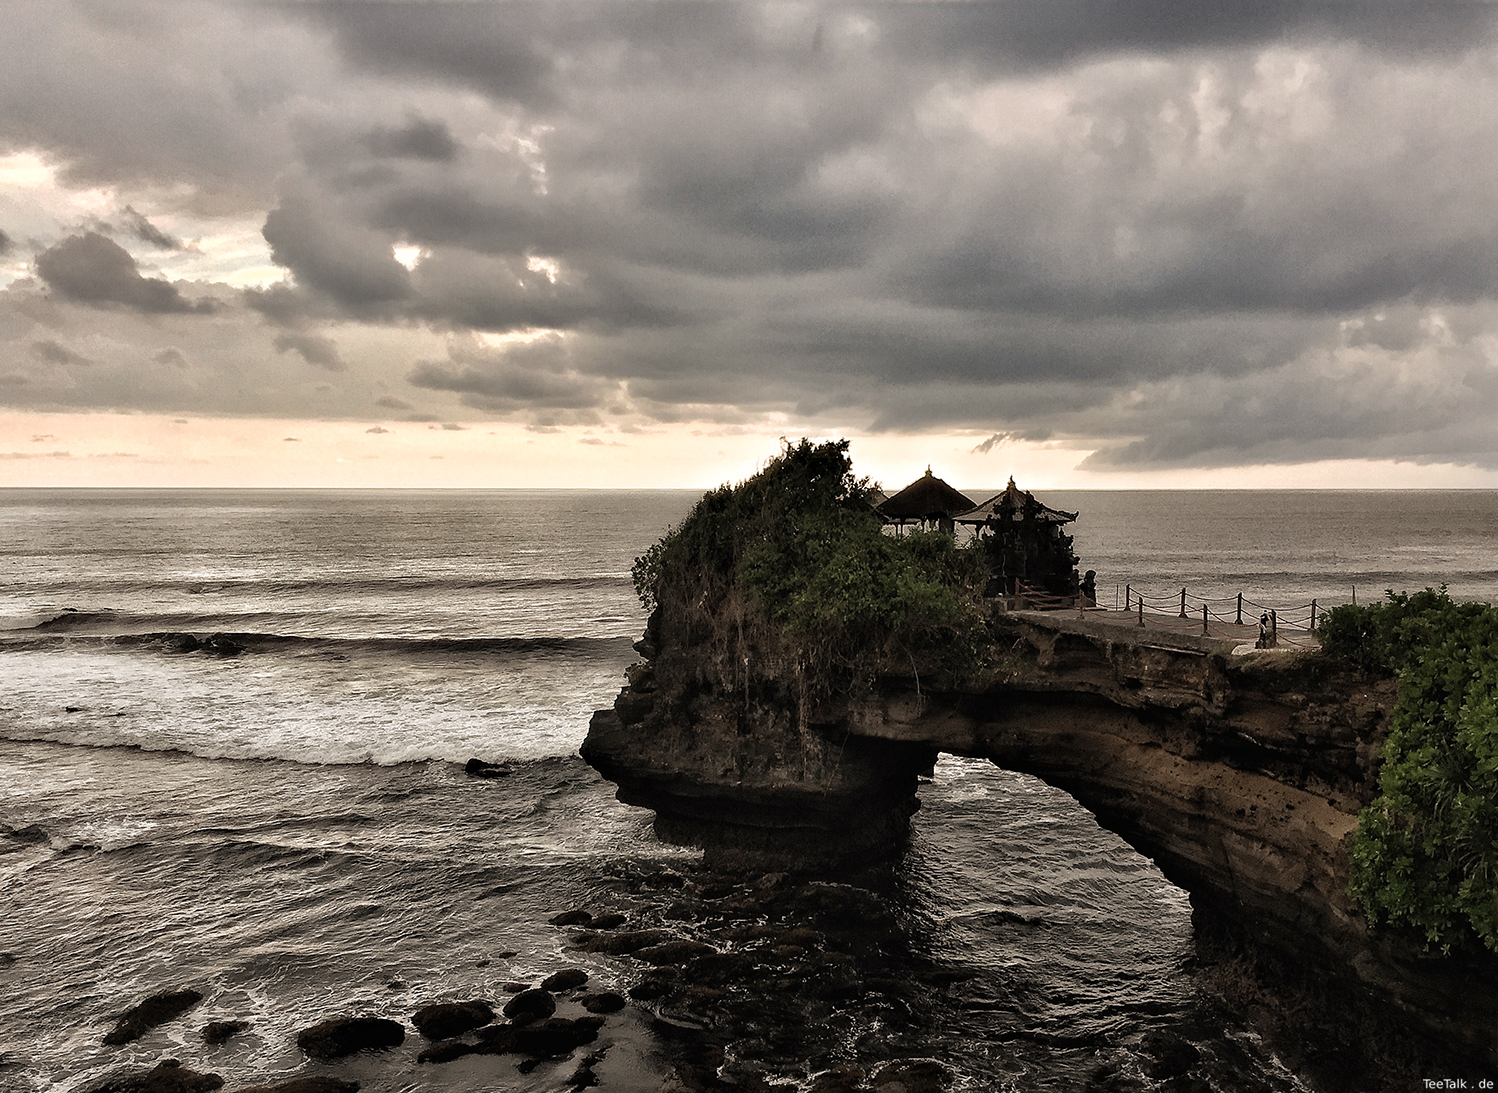 Pura batu bolong, Bali.